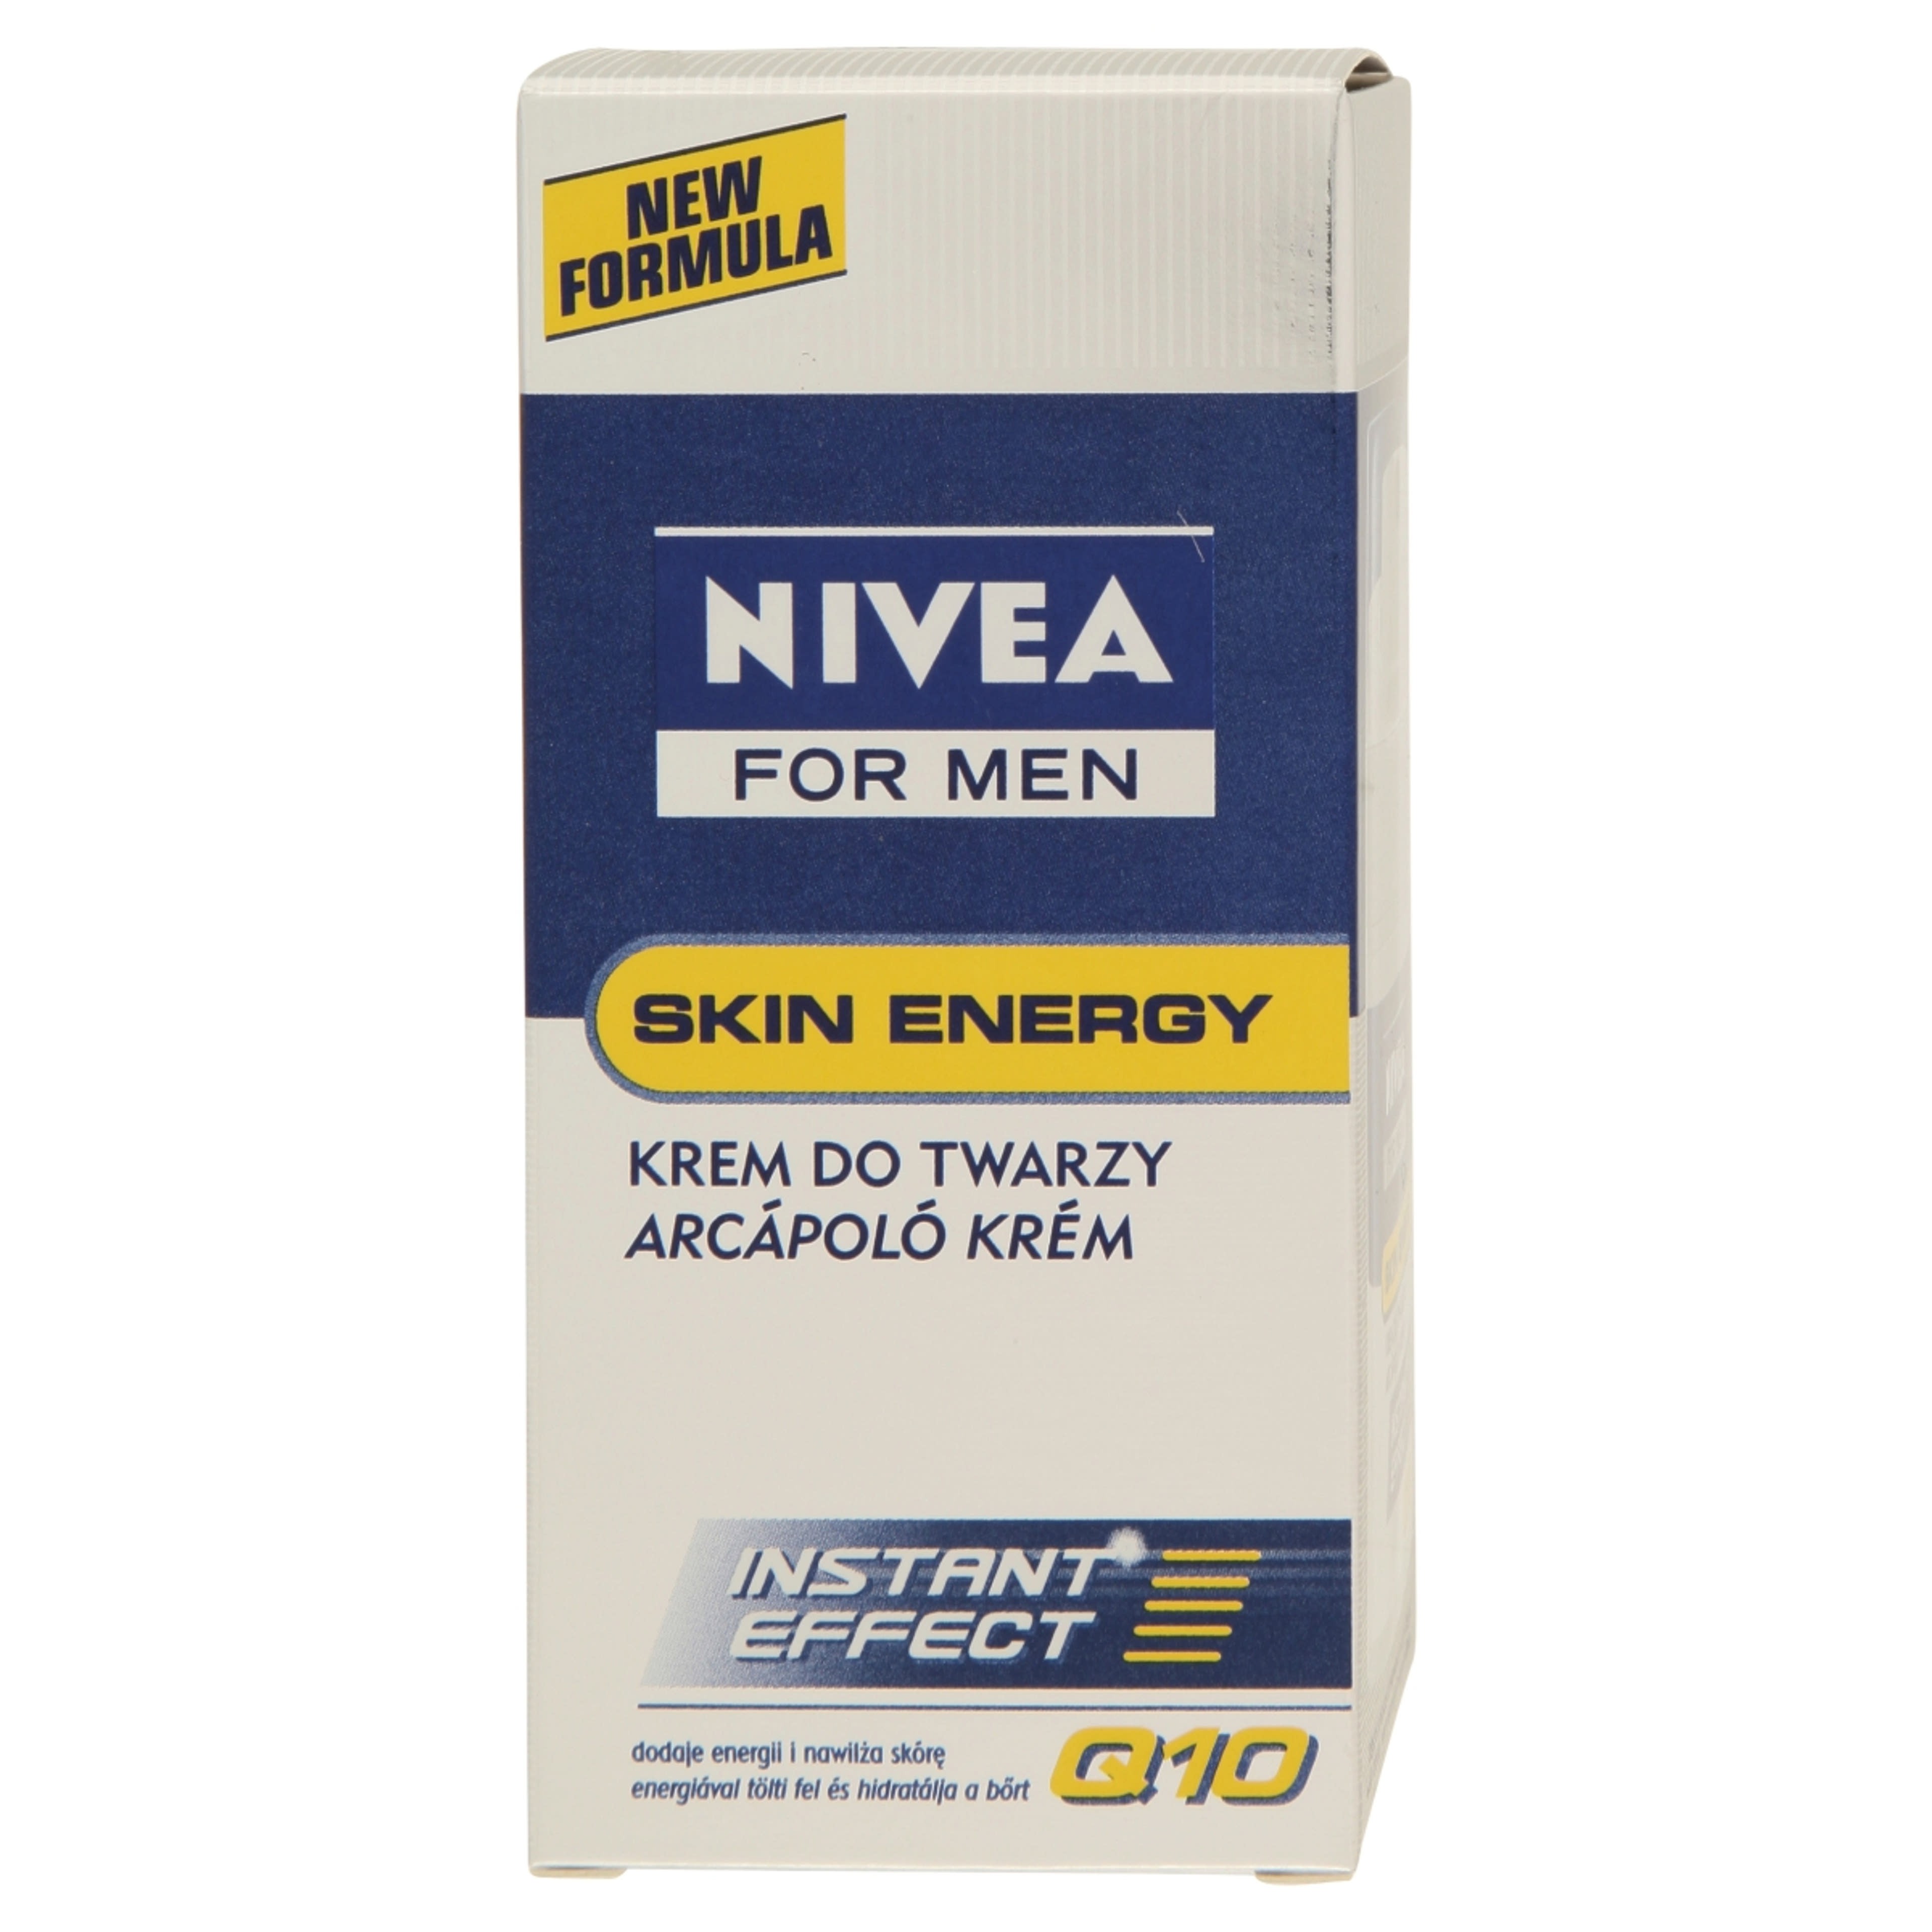 NIVEA MEN Active Energy Revitalizáló Arckrém - 50 ml